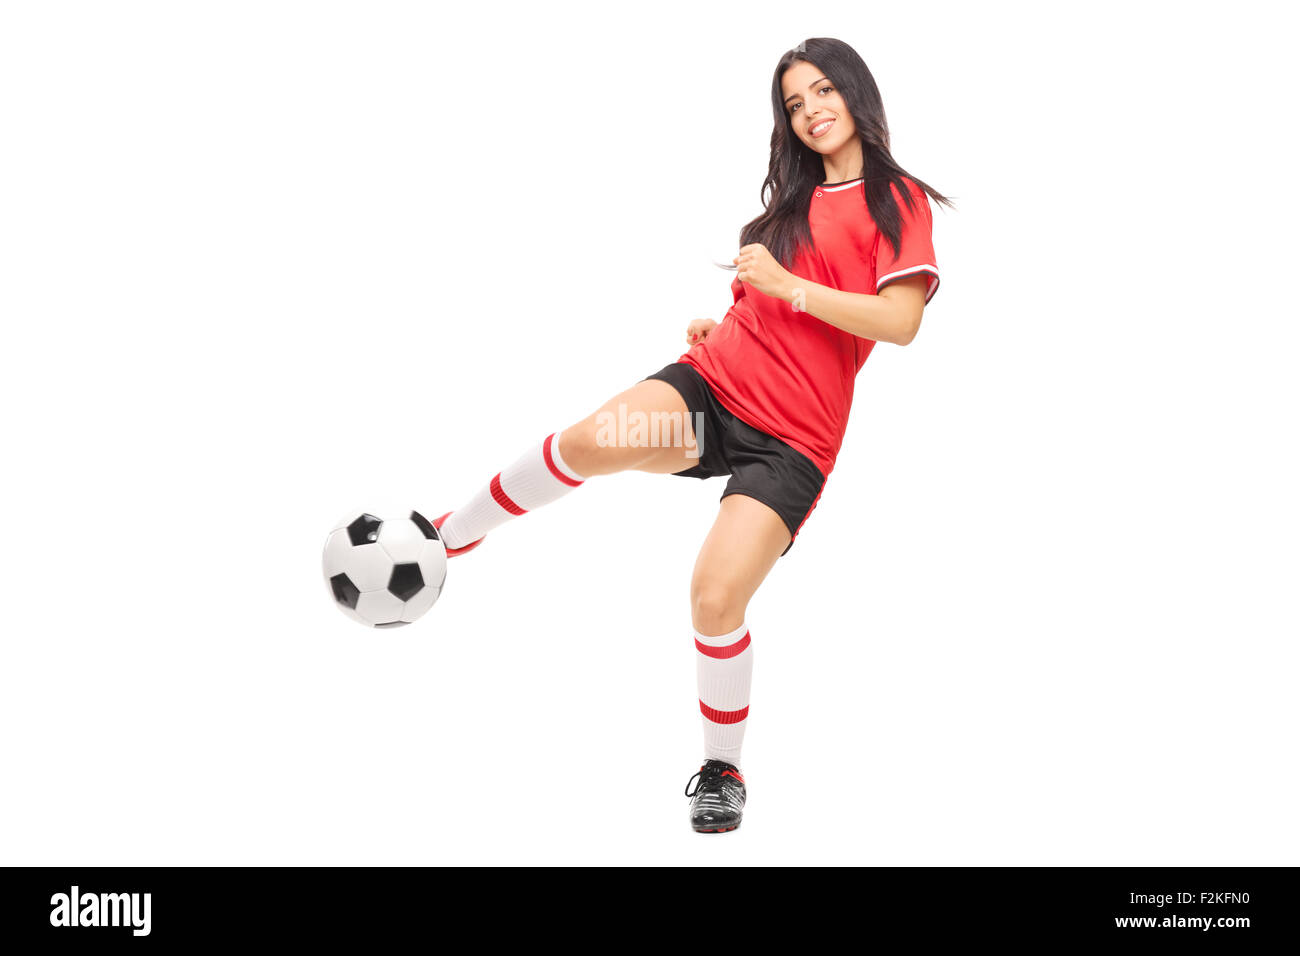 Allegro calcio femminile di tiro del giocatore una sfera e guardando la telecamera isolata su sfondo bianco Foto Stock